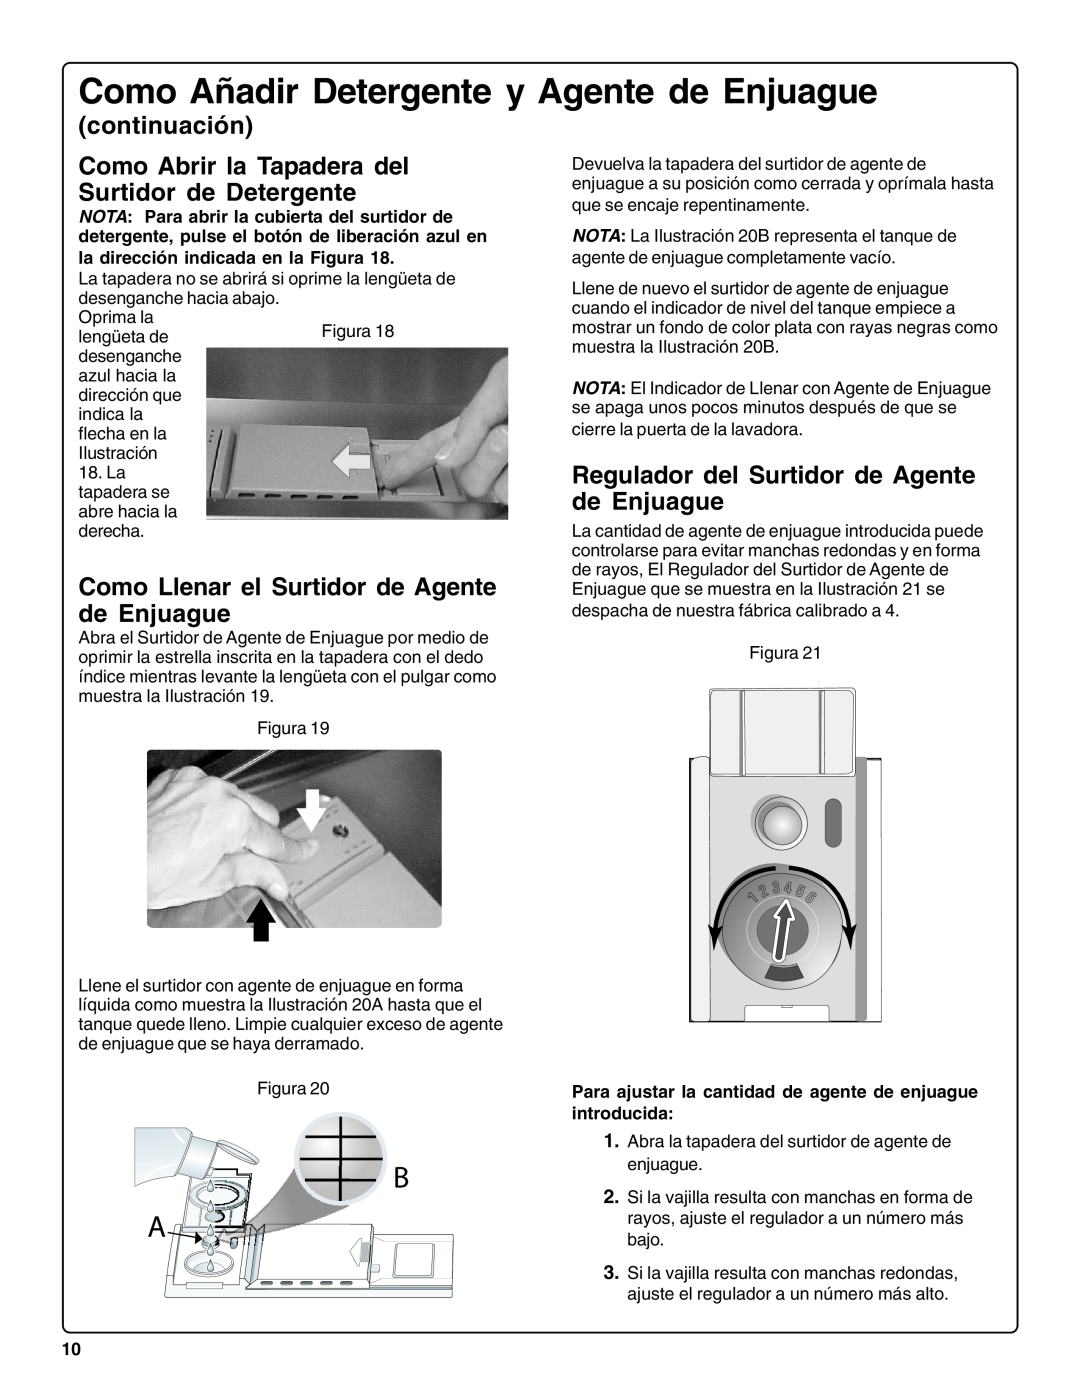 Bosch Appliances sHe43C installation instructions continuación Como Abrir la Tapadera del Surtidor de Detergente 